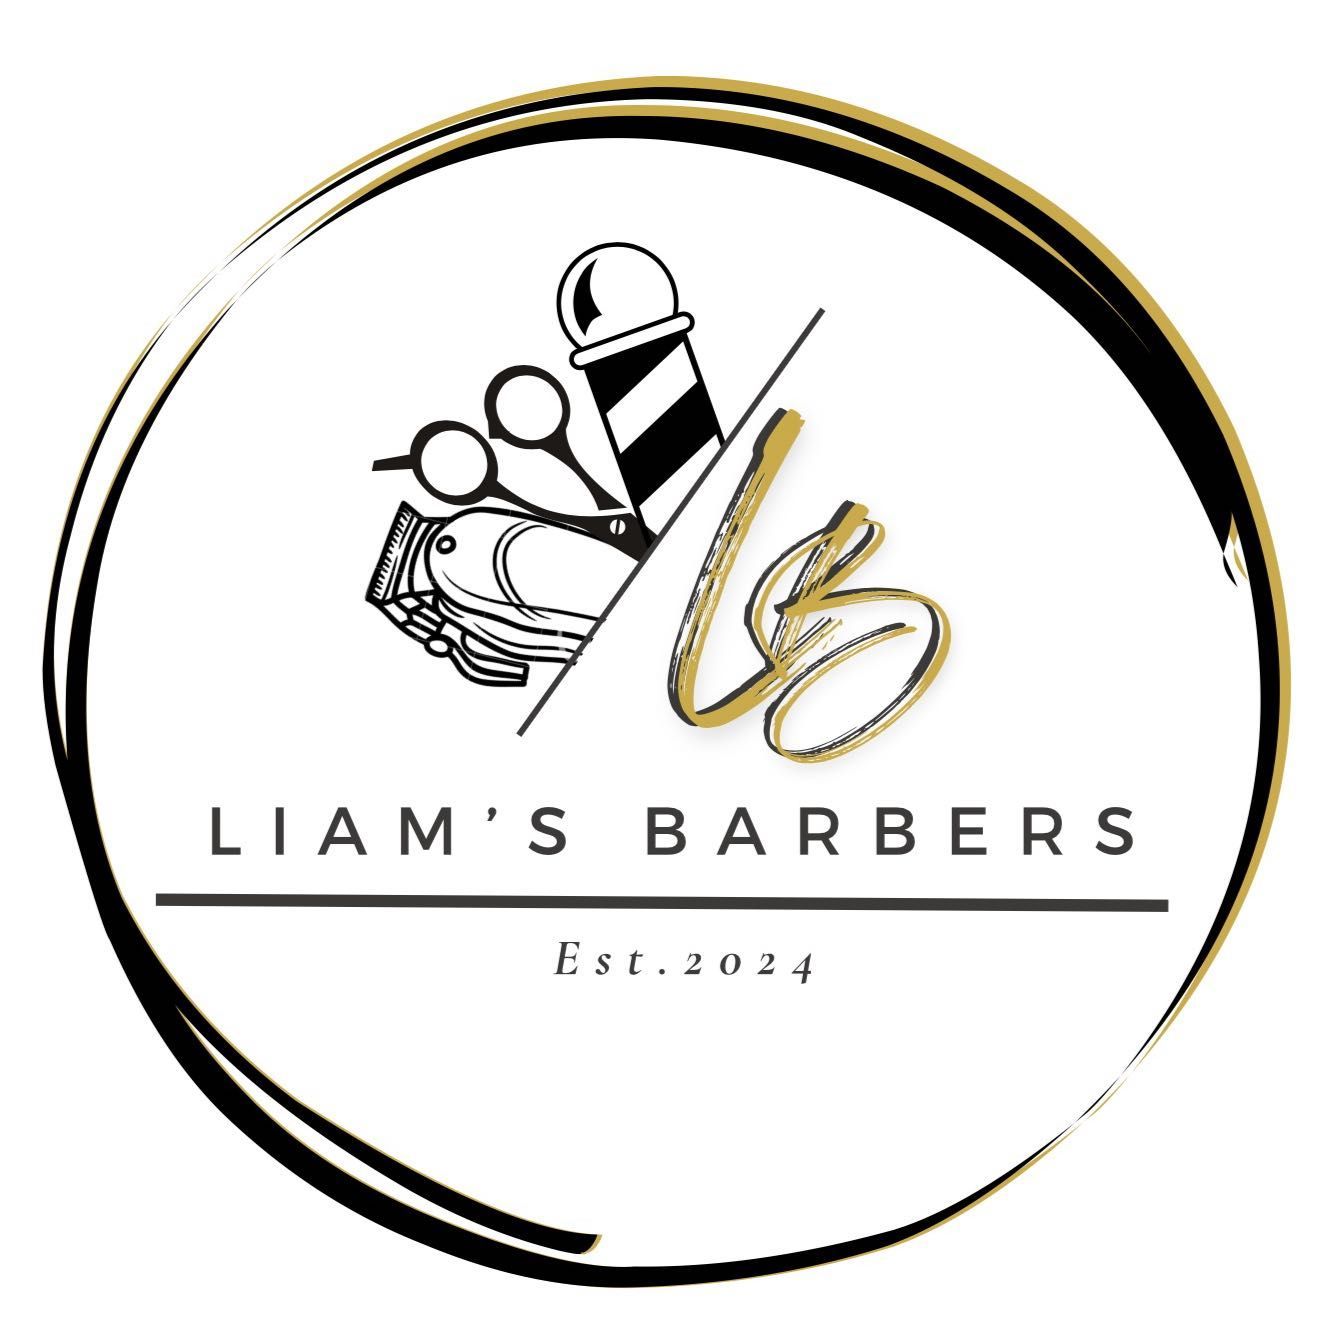 Liam’s Barbers, 105 New Road, Rubery, B45 9JR, Birmingham